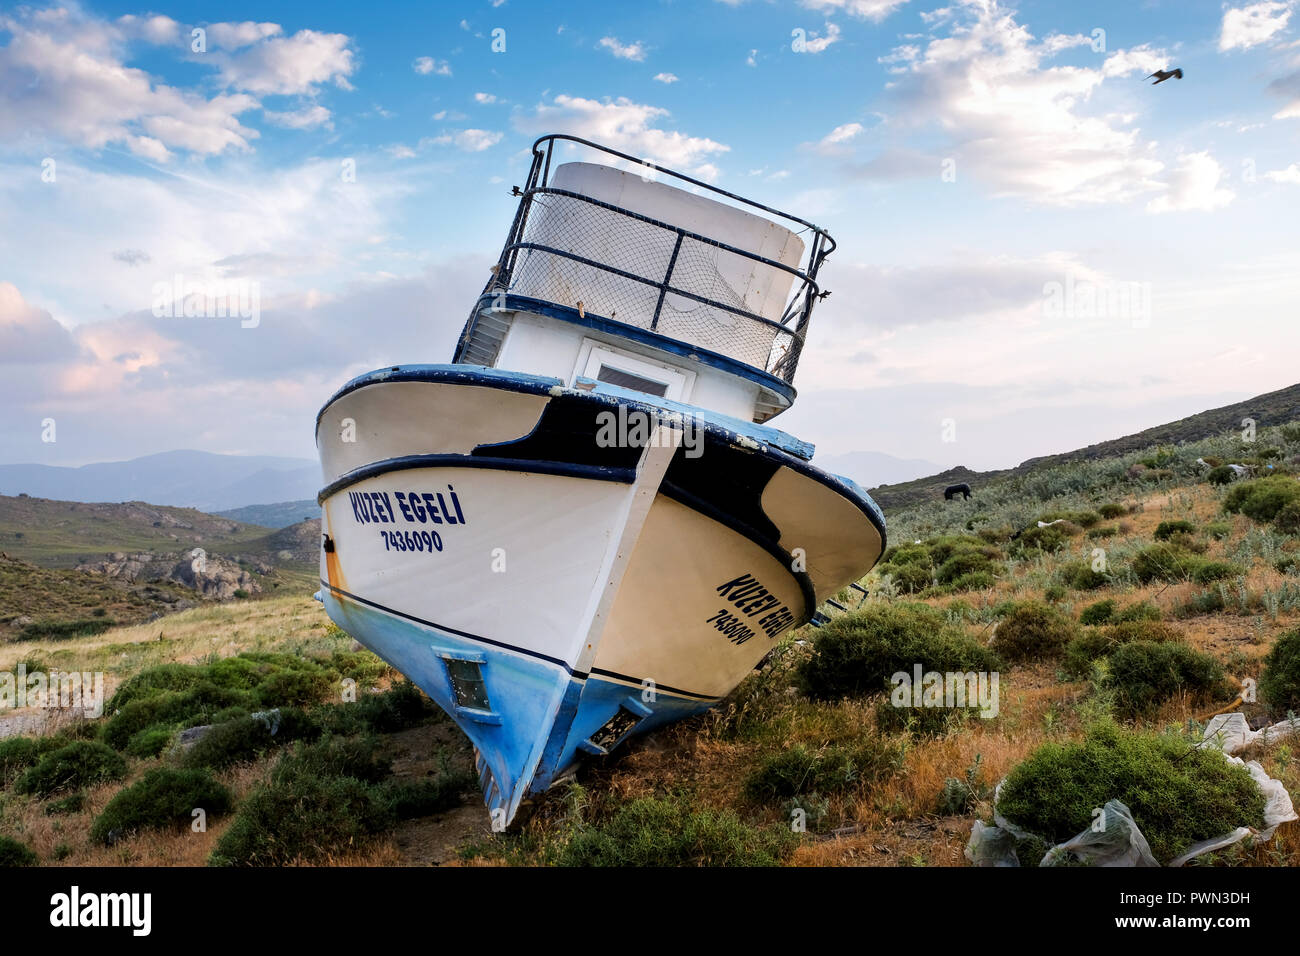 Beschädigte Boote von Flüchtlingen aus der Türkei über das Mittelmeer liegen geflohen sind, auf einem garbarge Deponie in der Nähe von Molivos, Lesbos, Griechenland, im Mai 2018 - Fluchtboote in einer Mülldeponie bei Molivos, Insel Lesbos, Griechenland, Mai 2018 Stockfoto